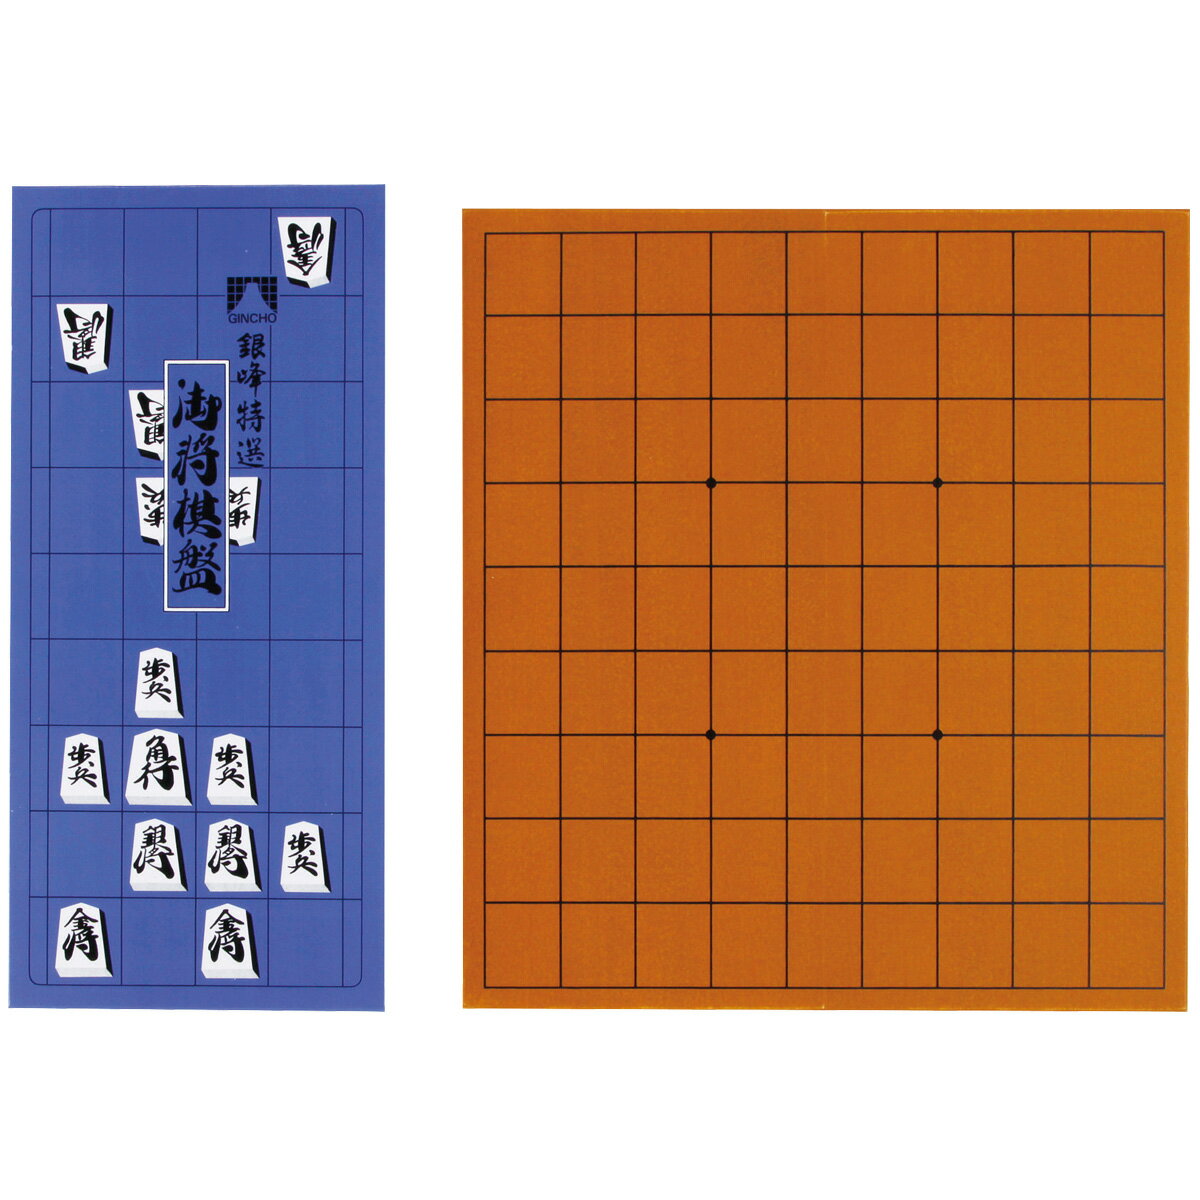 将棋盤 5号 将棋 遊び ゲーム 子供 こども ボードゲーム おもちゃ 室内 二つ折りタイプ